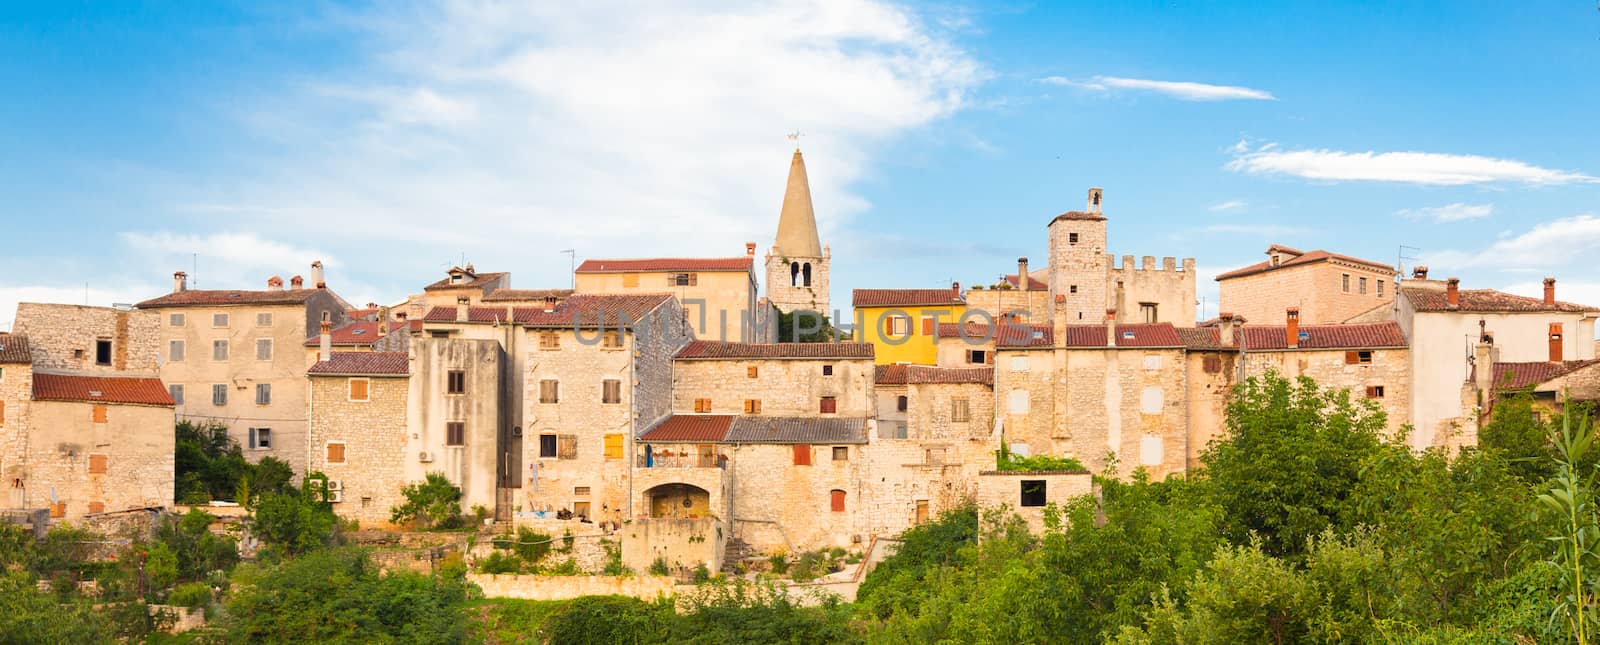 Panorama of Bale village in Istrian peninsula, Croatia.